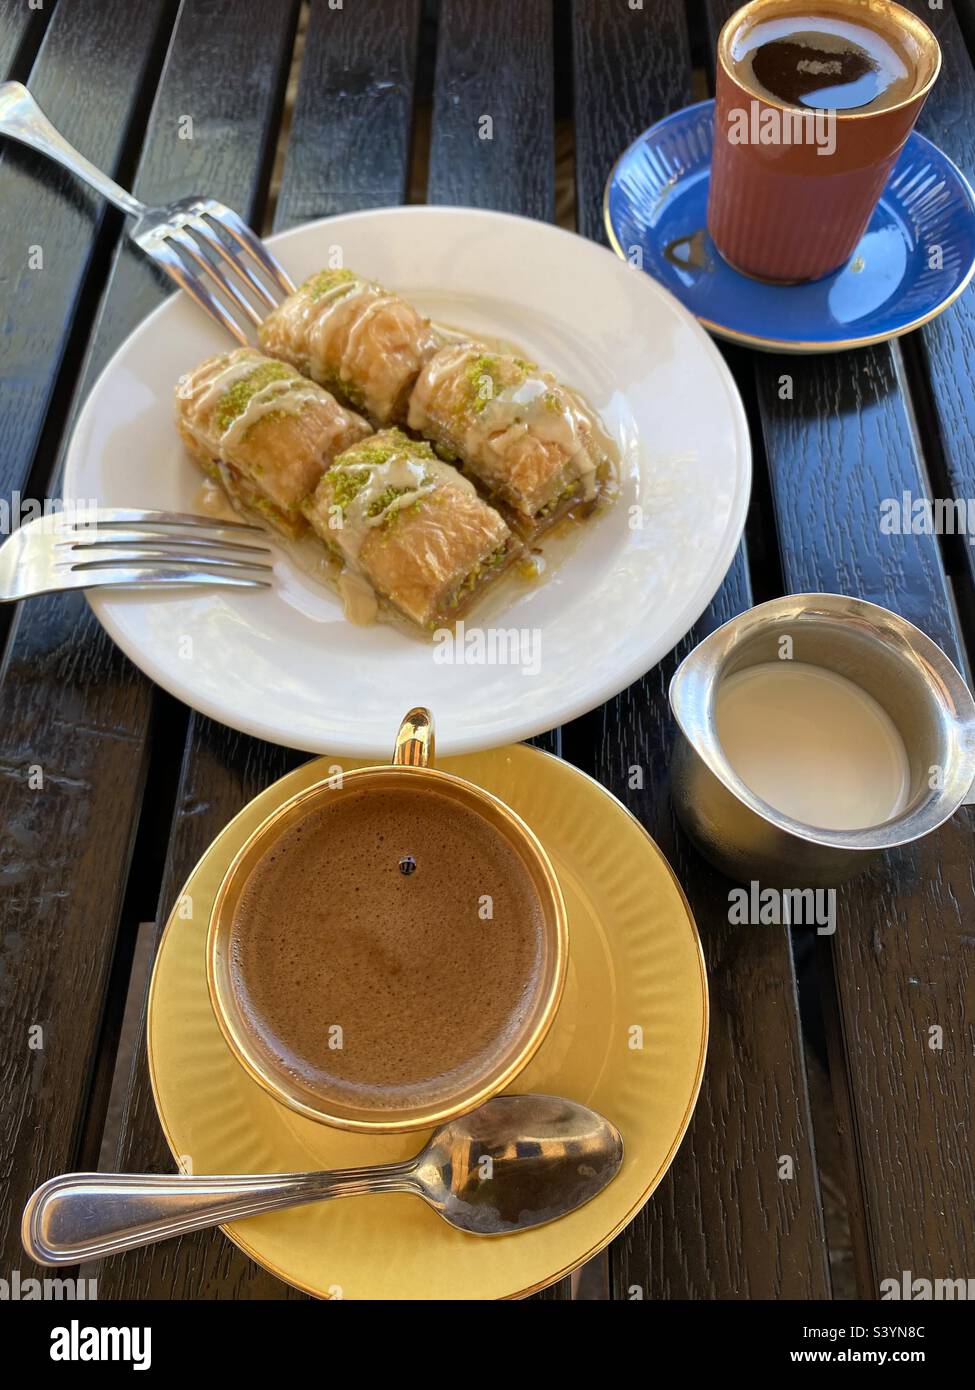 Türkisches Restaurant - Baklava-Dessert und türkischer Kaffee. Stockfoto